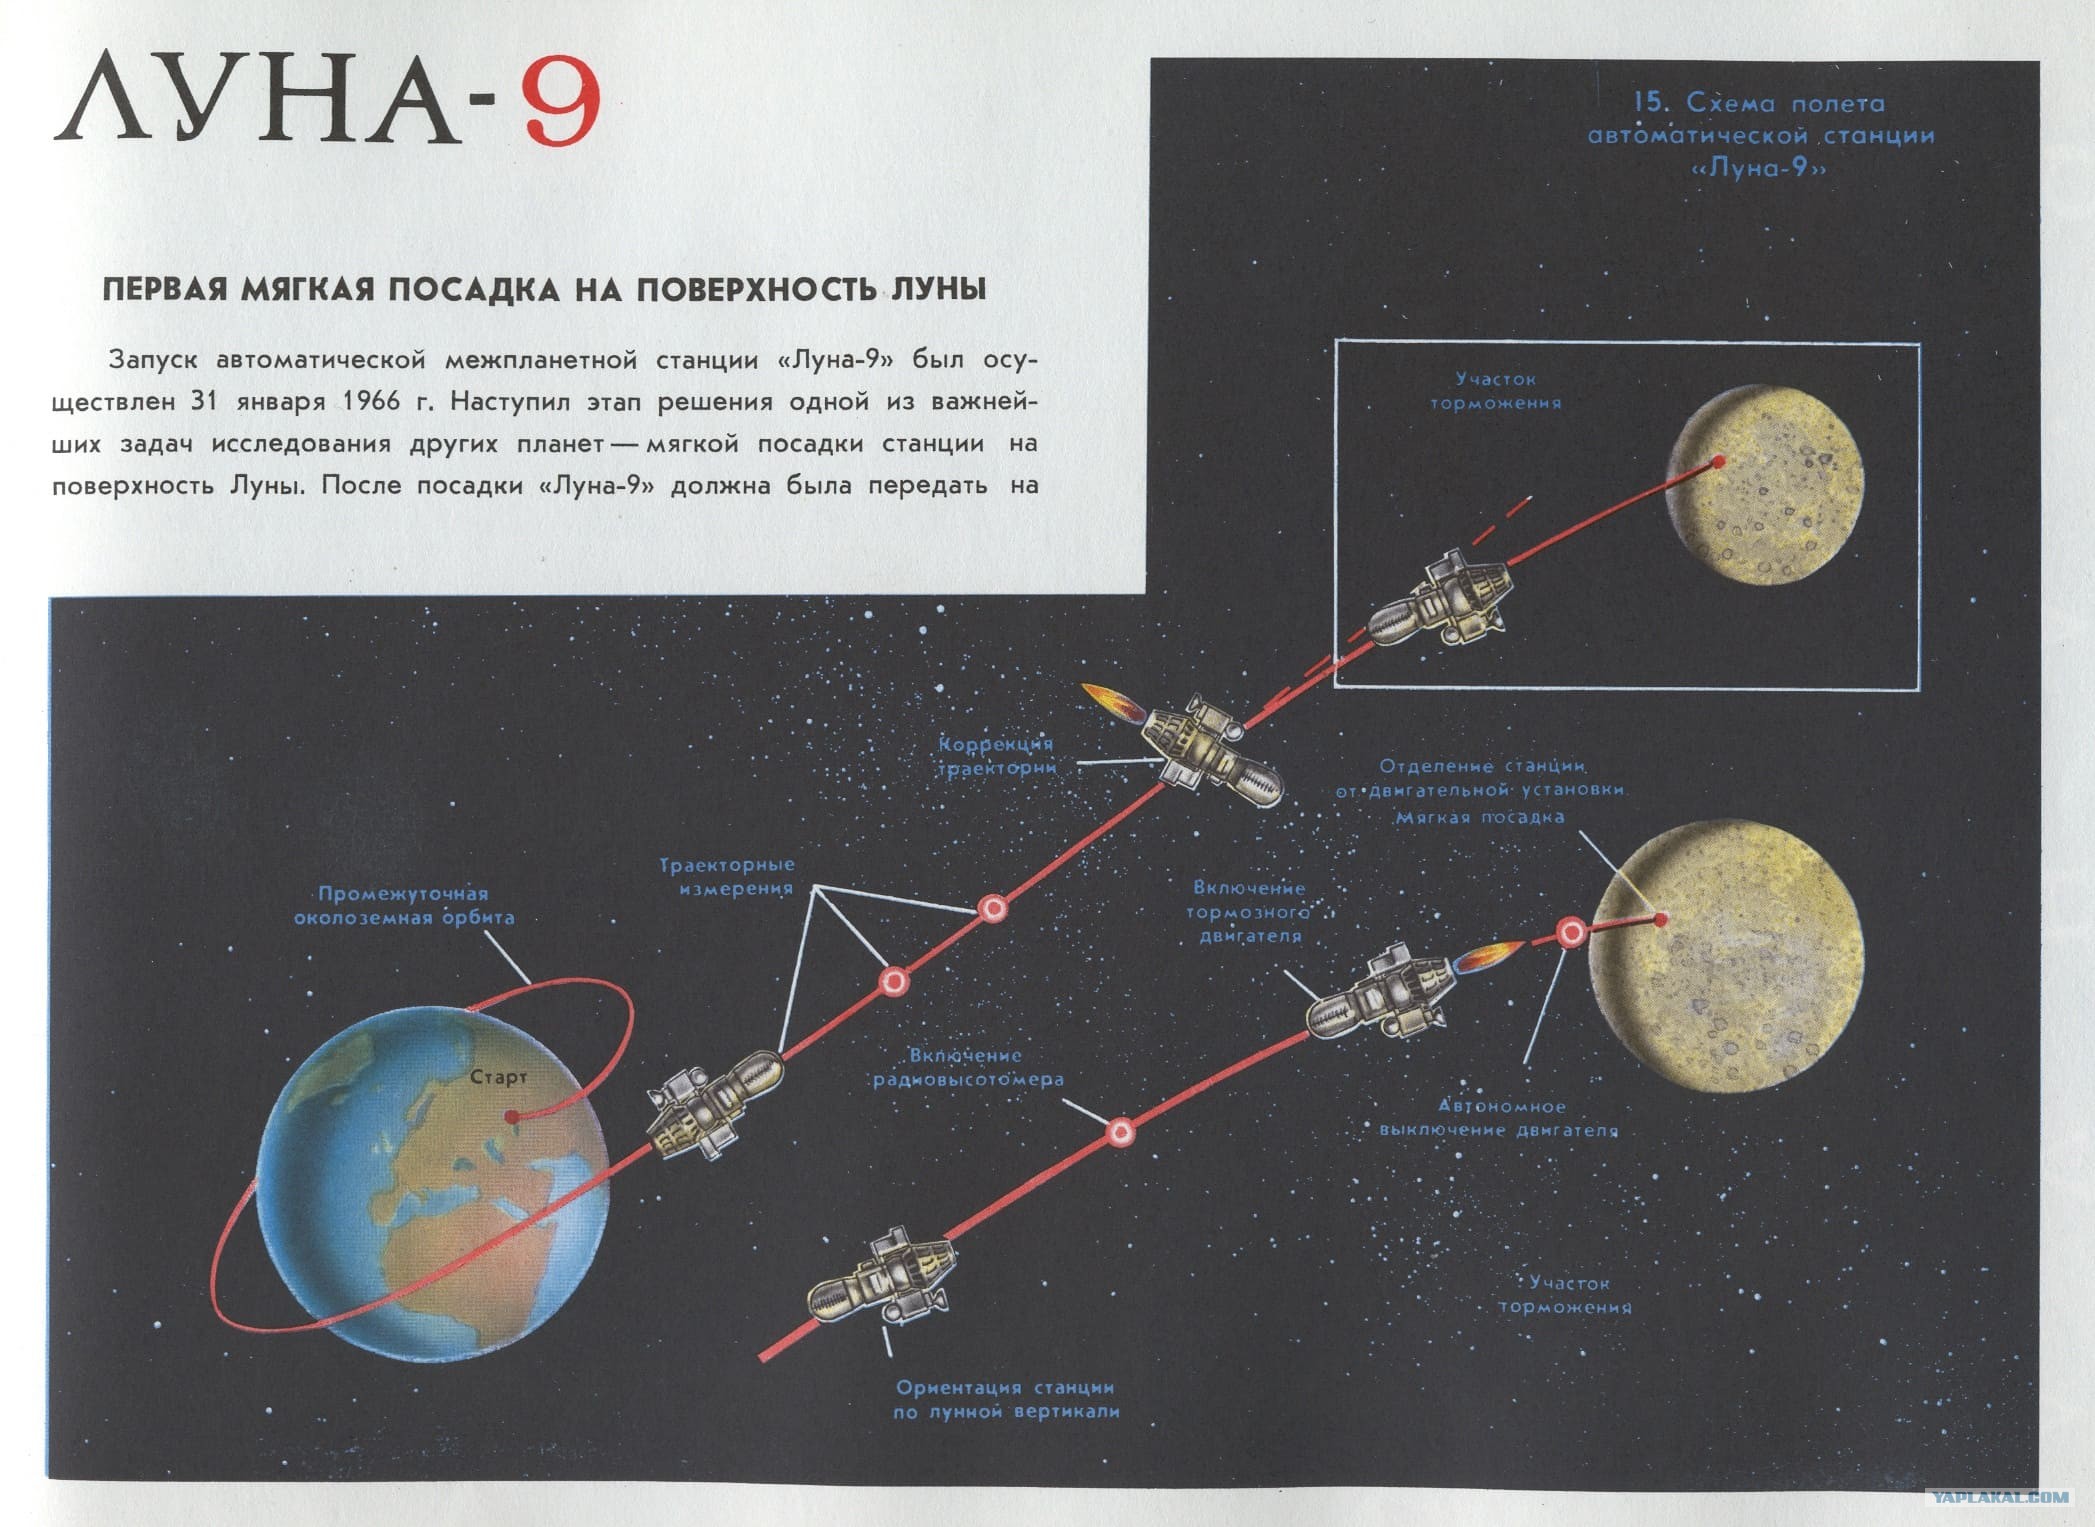 Какие страны достигли луны. Станция Луна 9 мягкая посадка на луну. Луна-9 схема посадки. Луна-9 автоматическая межпланетная станция. Схема посадки лунной станции СССР.